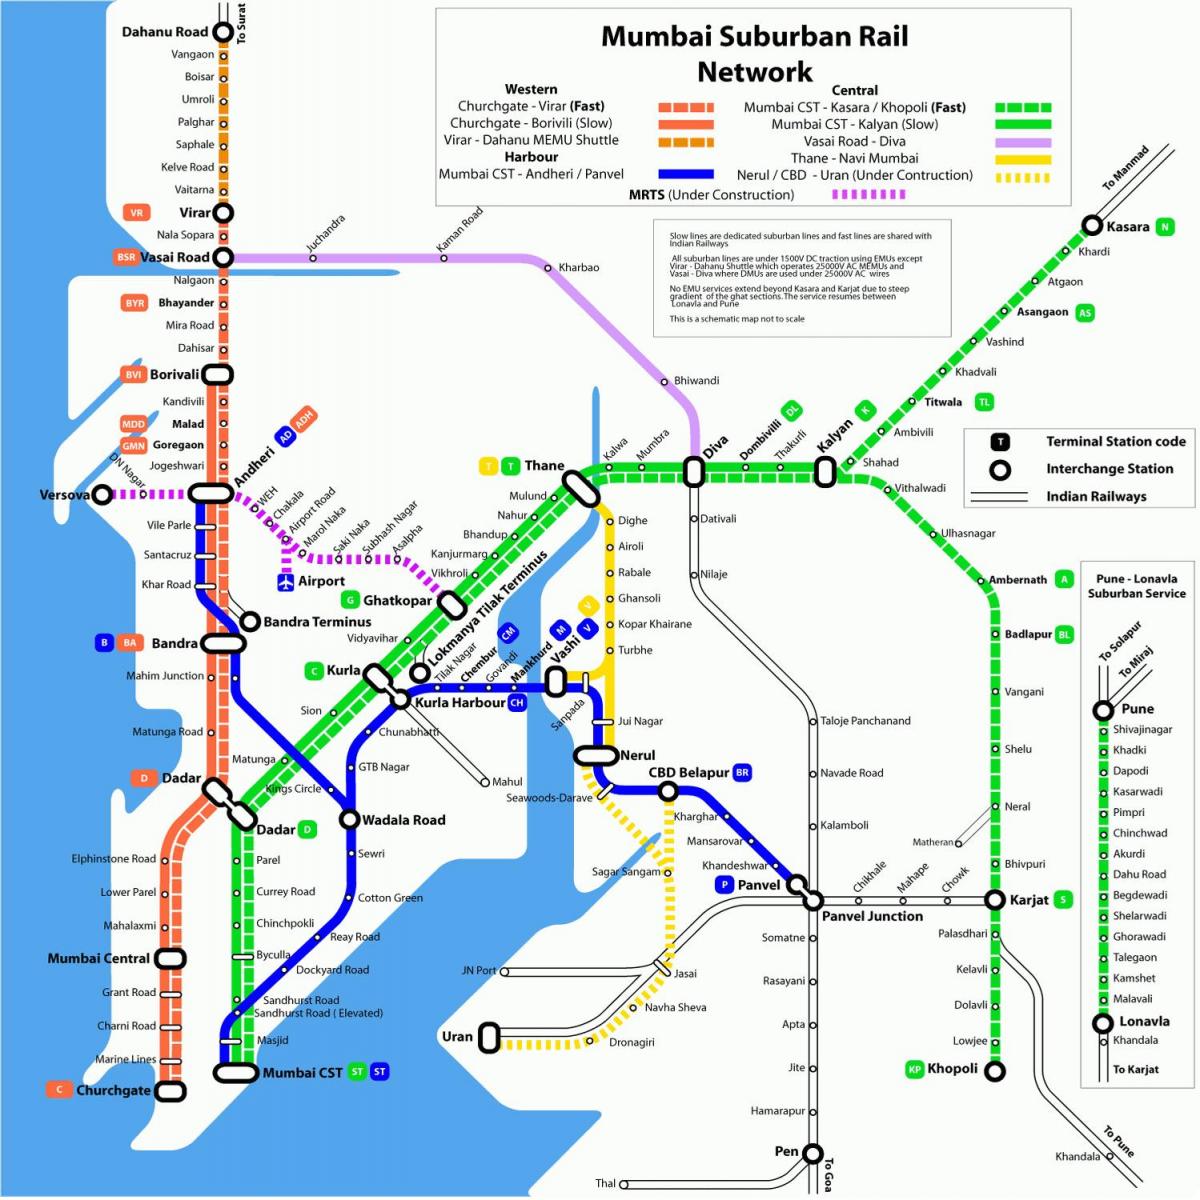 Mumbajus vietos stotis map